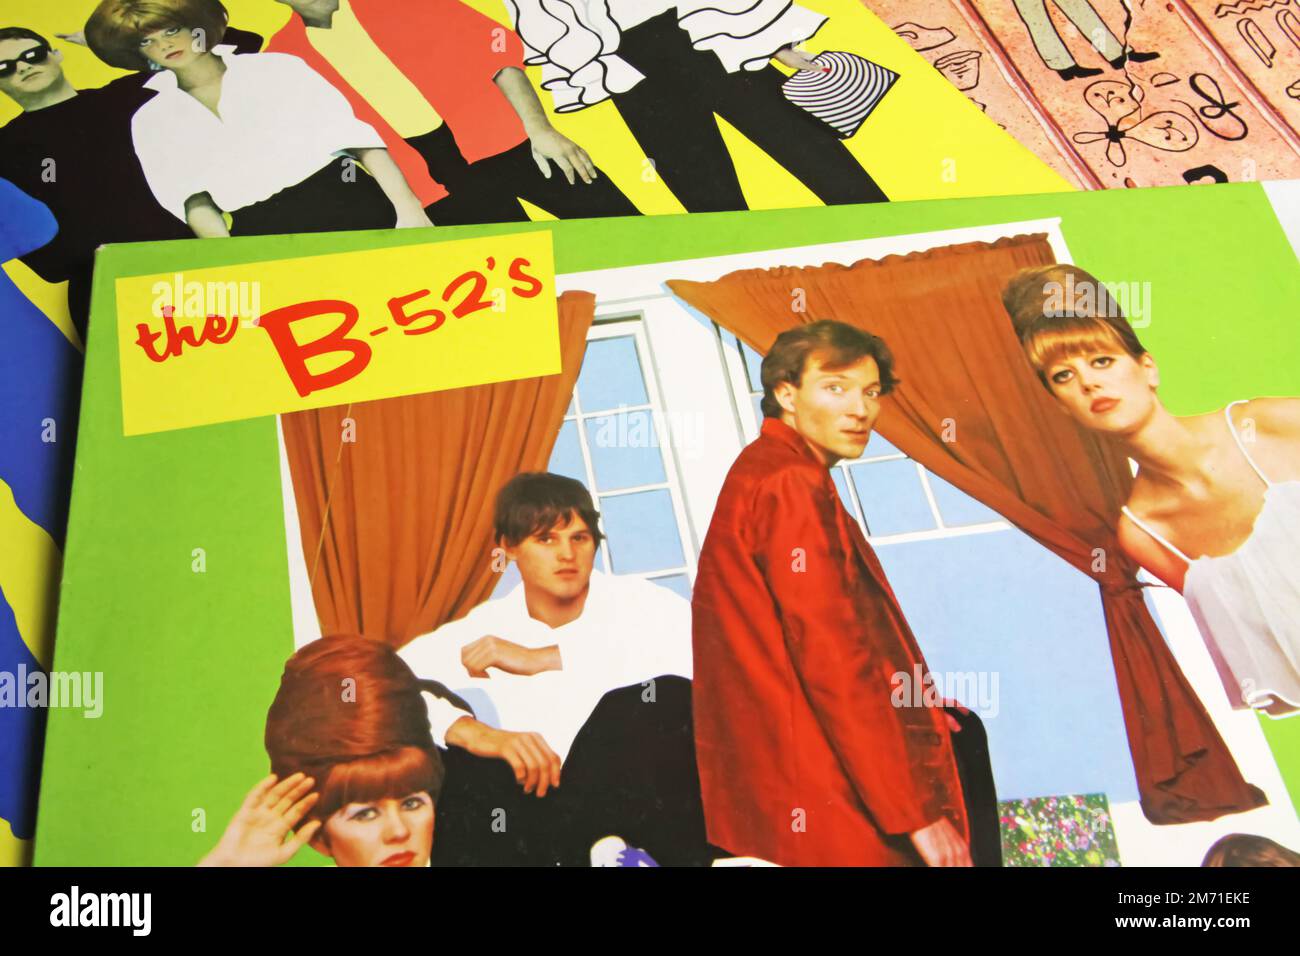 Viersen, Allemagne - 9 mai. 2022: Gros plan des couvertures de disques en vinyle coloré fantaisie de la bande B-52s du 80s Banque D'Images